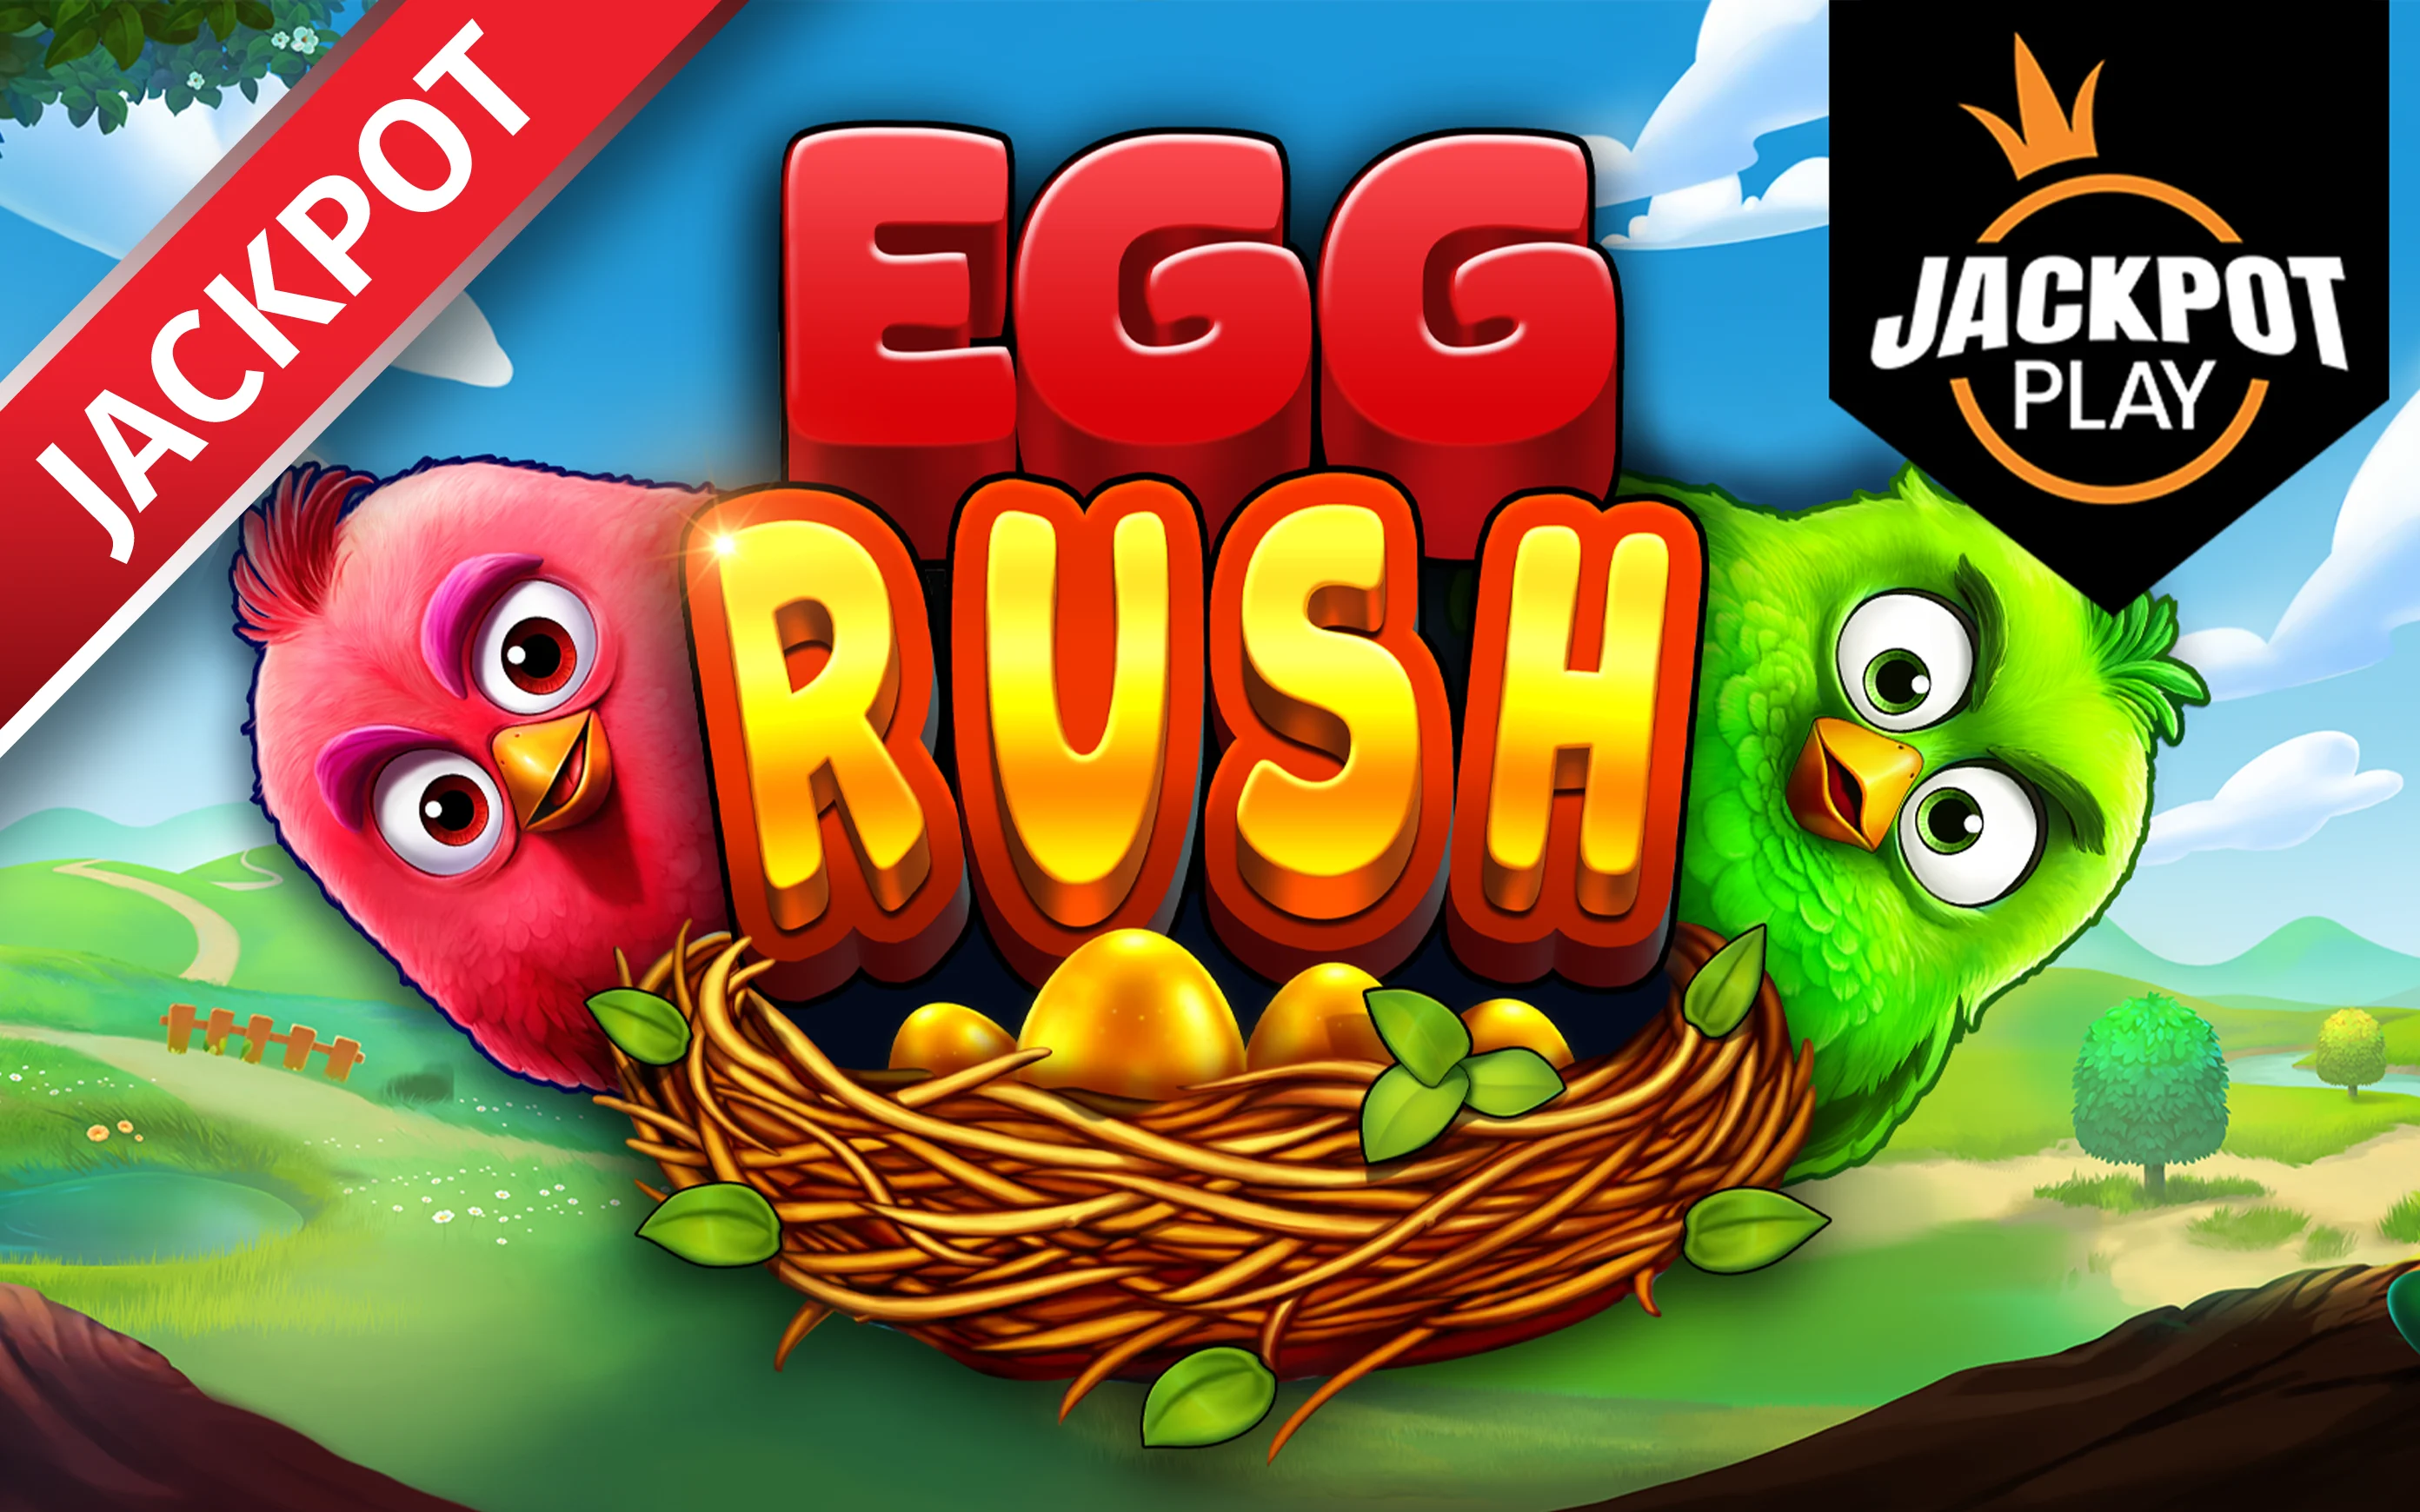 Jouer à Egg Rush Jackpot Play sur le casino en ligne Starcasino.be